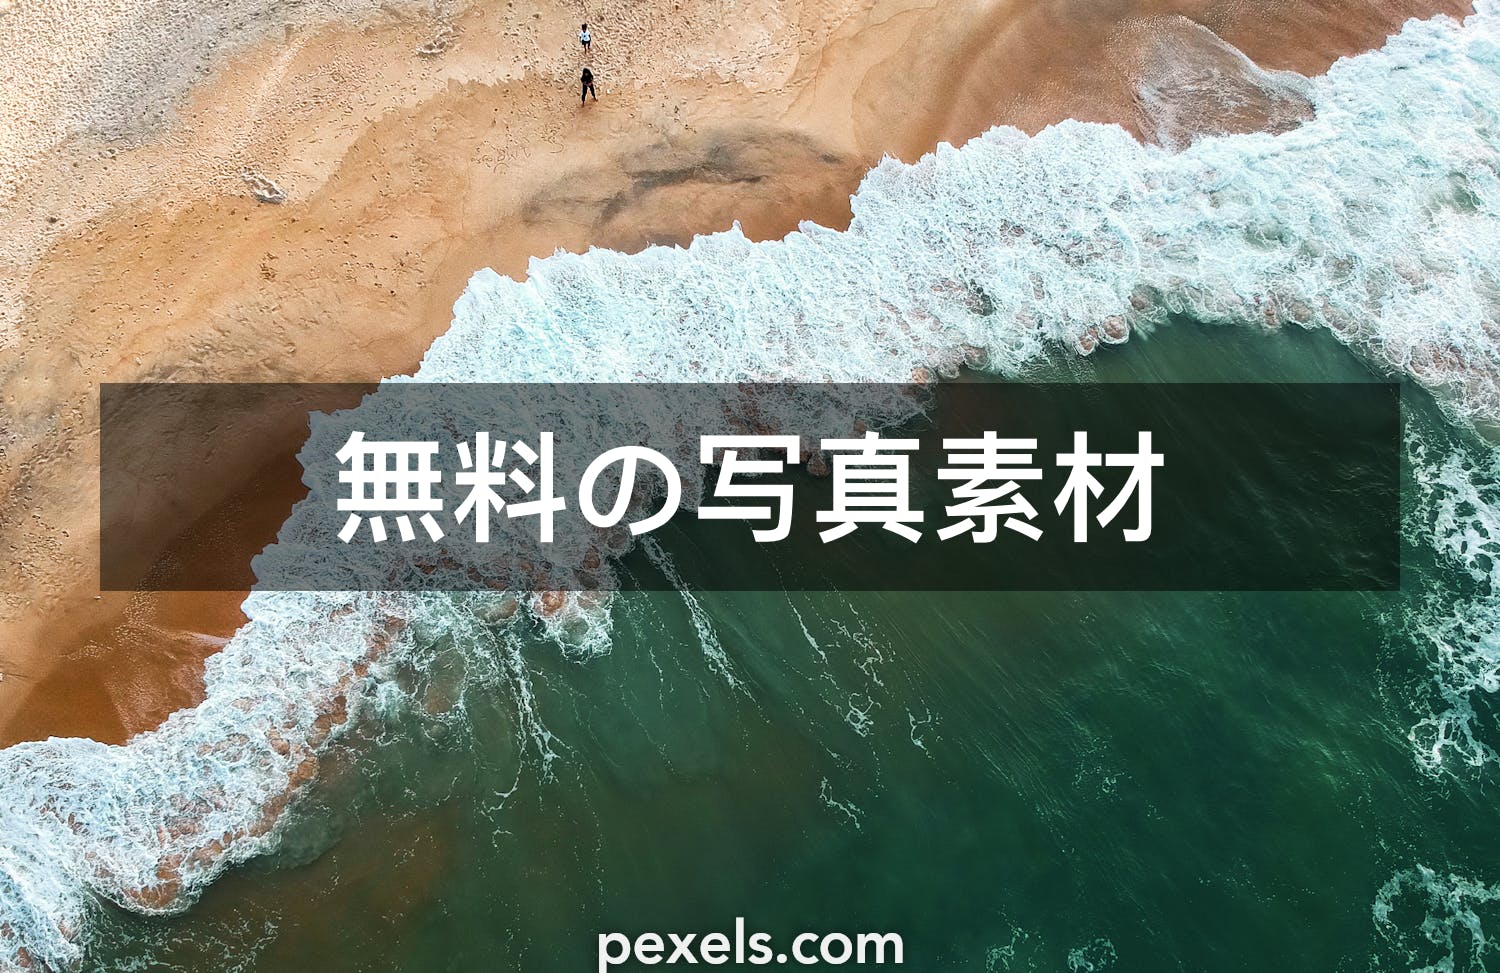 500 Macの壁紙と一致する写真 Pexels 無料の写真素材